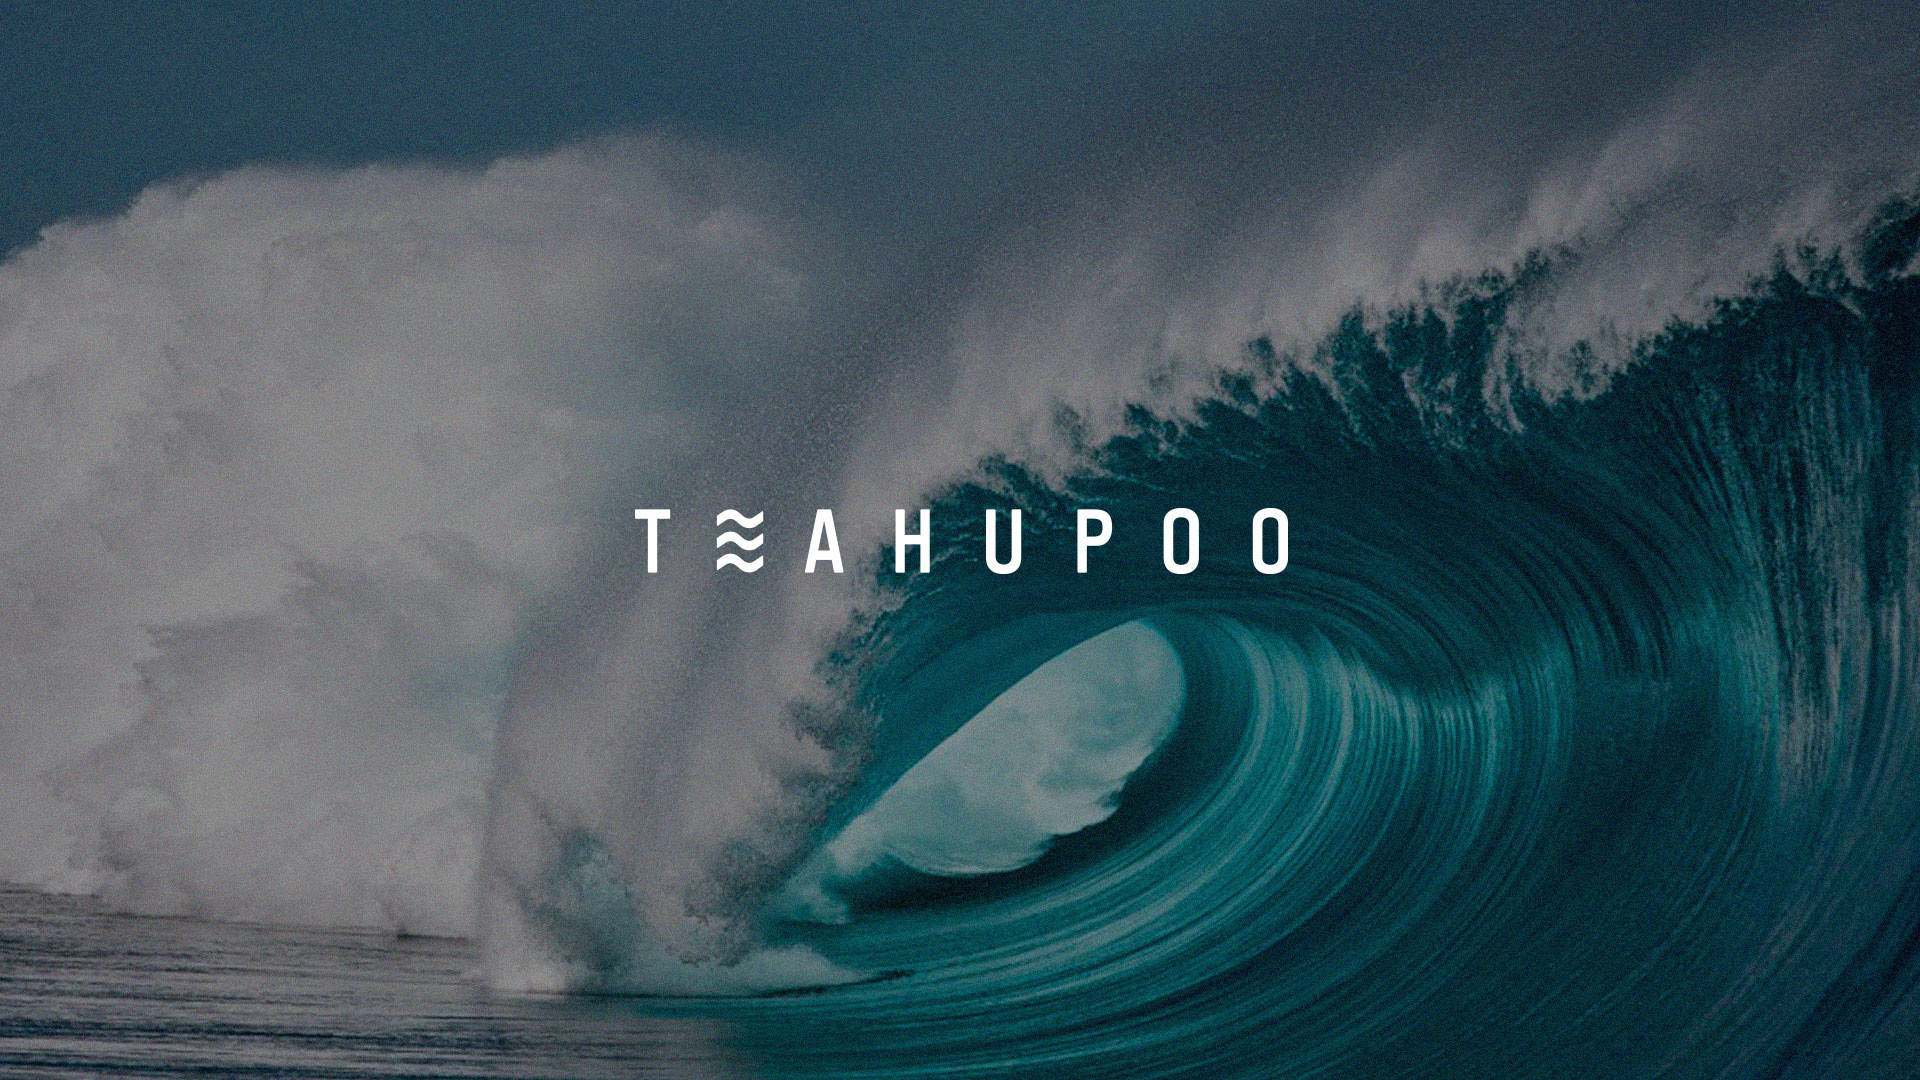 冲浪圣地Teahupo'o品牌视觉设计